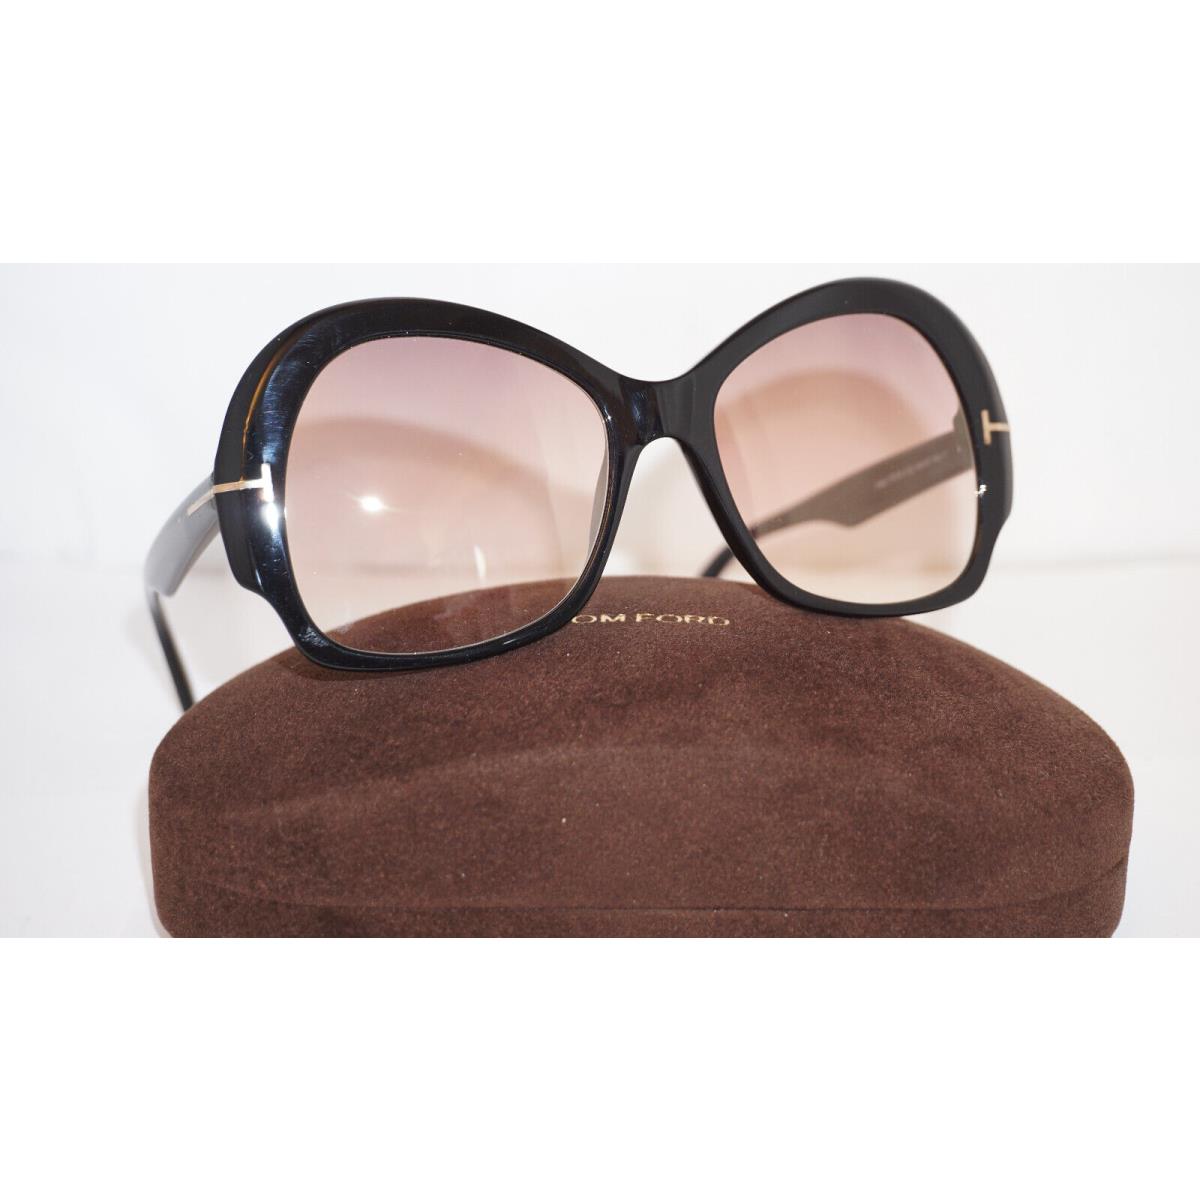 Tom Ford RX Eyeglasses Zelda Black Pink TF874 01G 56 18 140